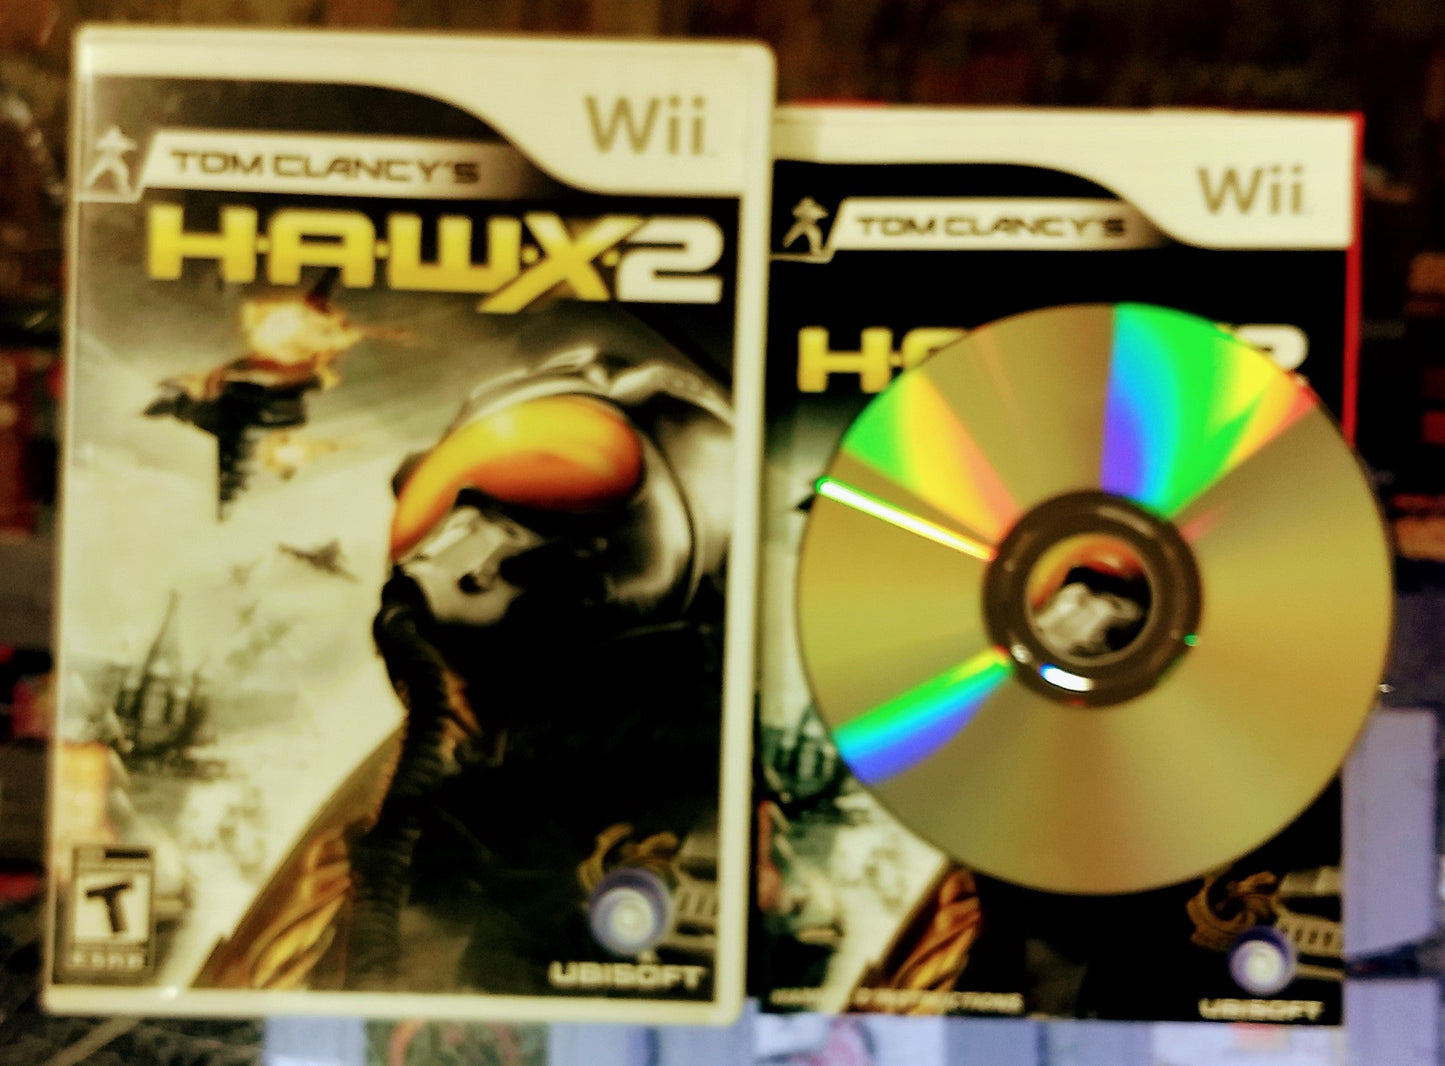 TOM CLANCY'S HAWX 2 (NINTENDO WII) - jeux video game-x